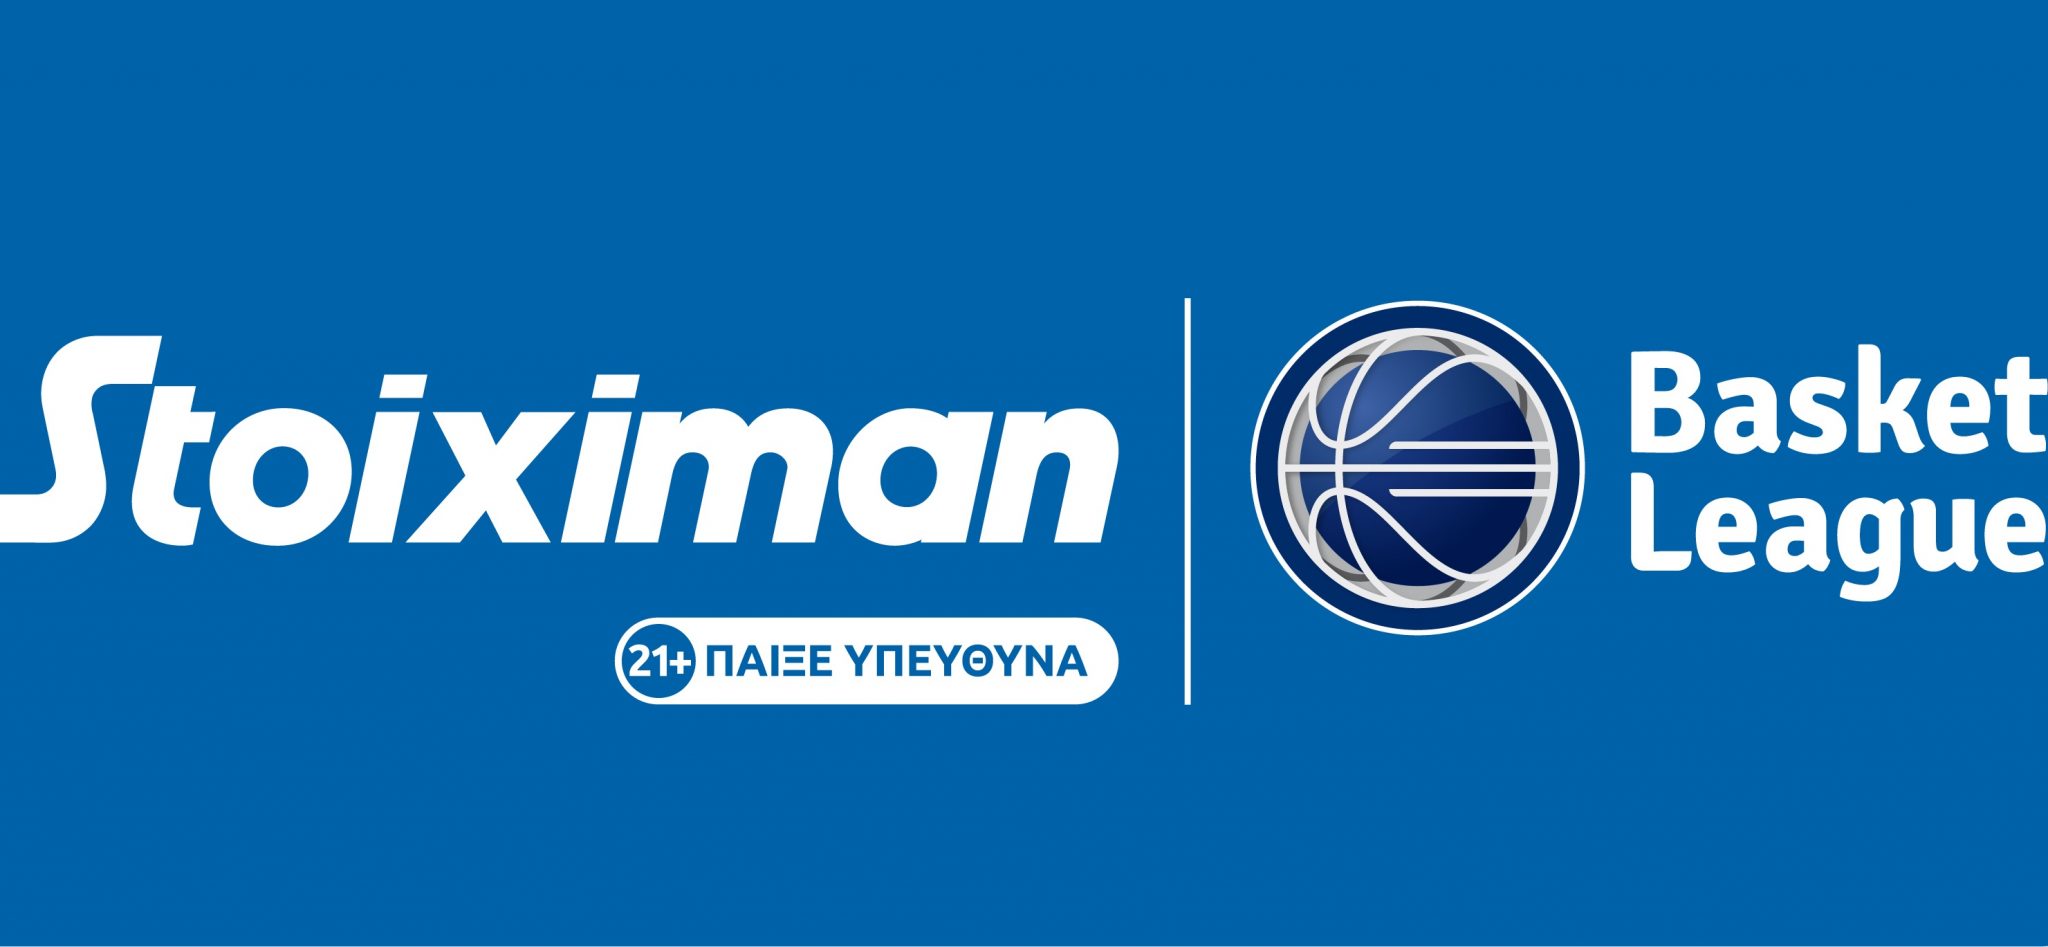 «Stoiximan Basket League: Η Stoiximan Μεγάλος Χορηγός του ελληνικού πρωταθλήματος μπάσκετ»